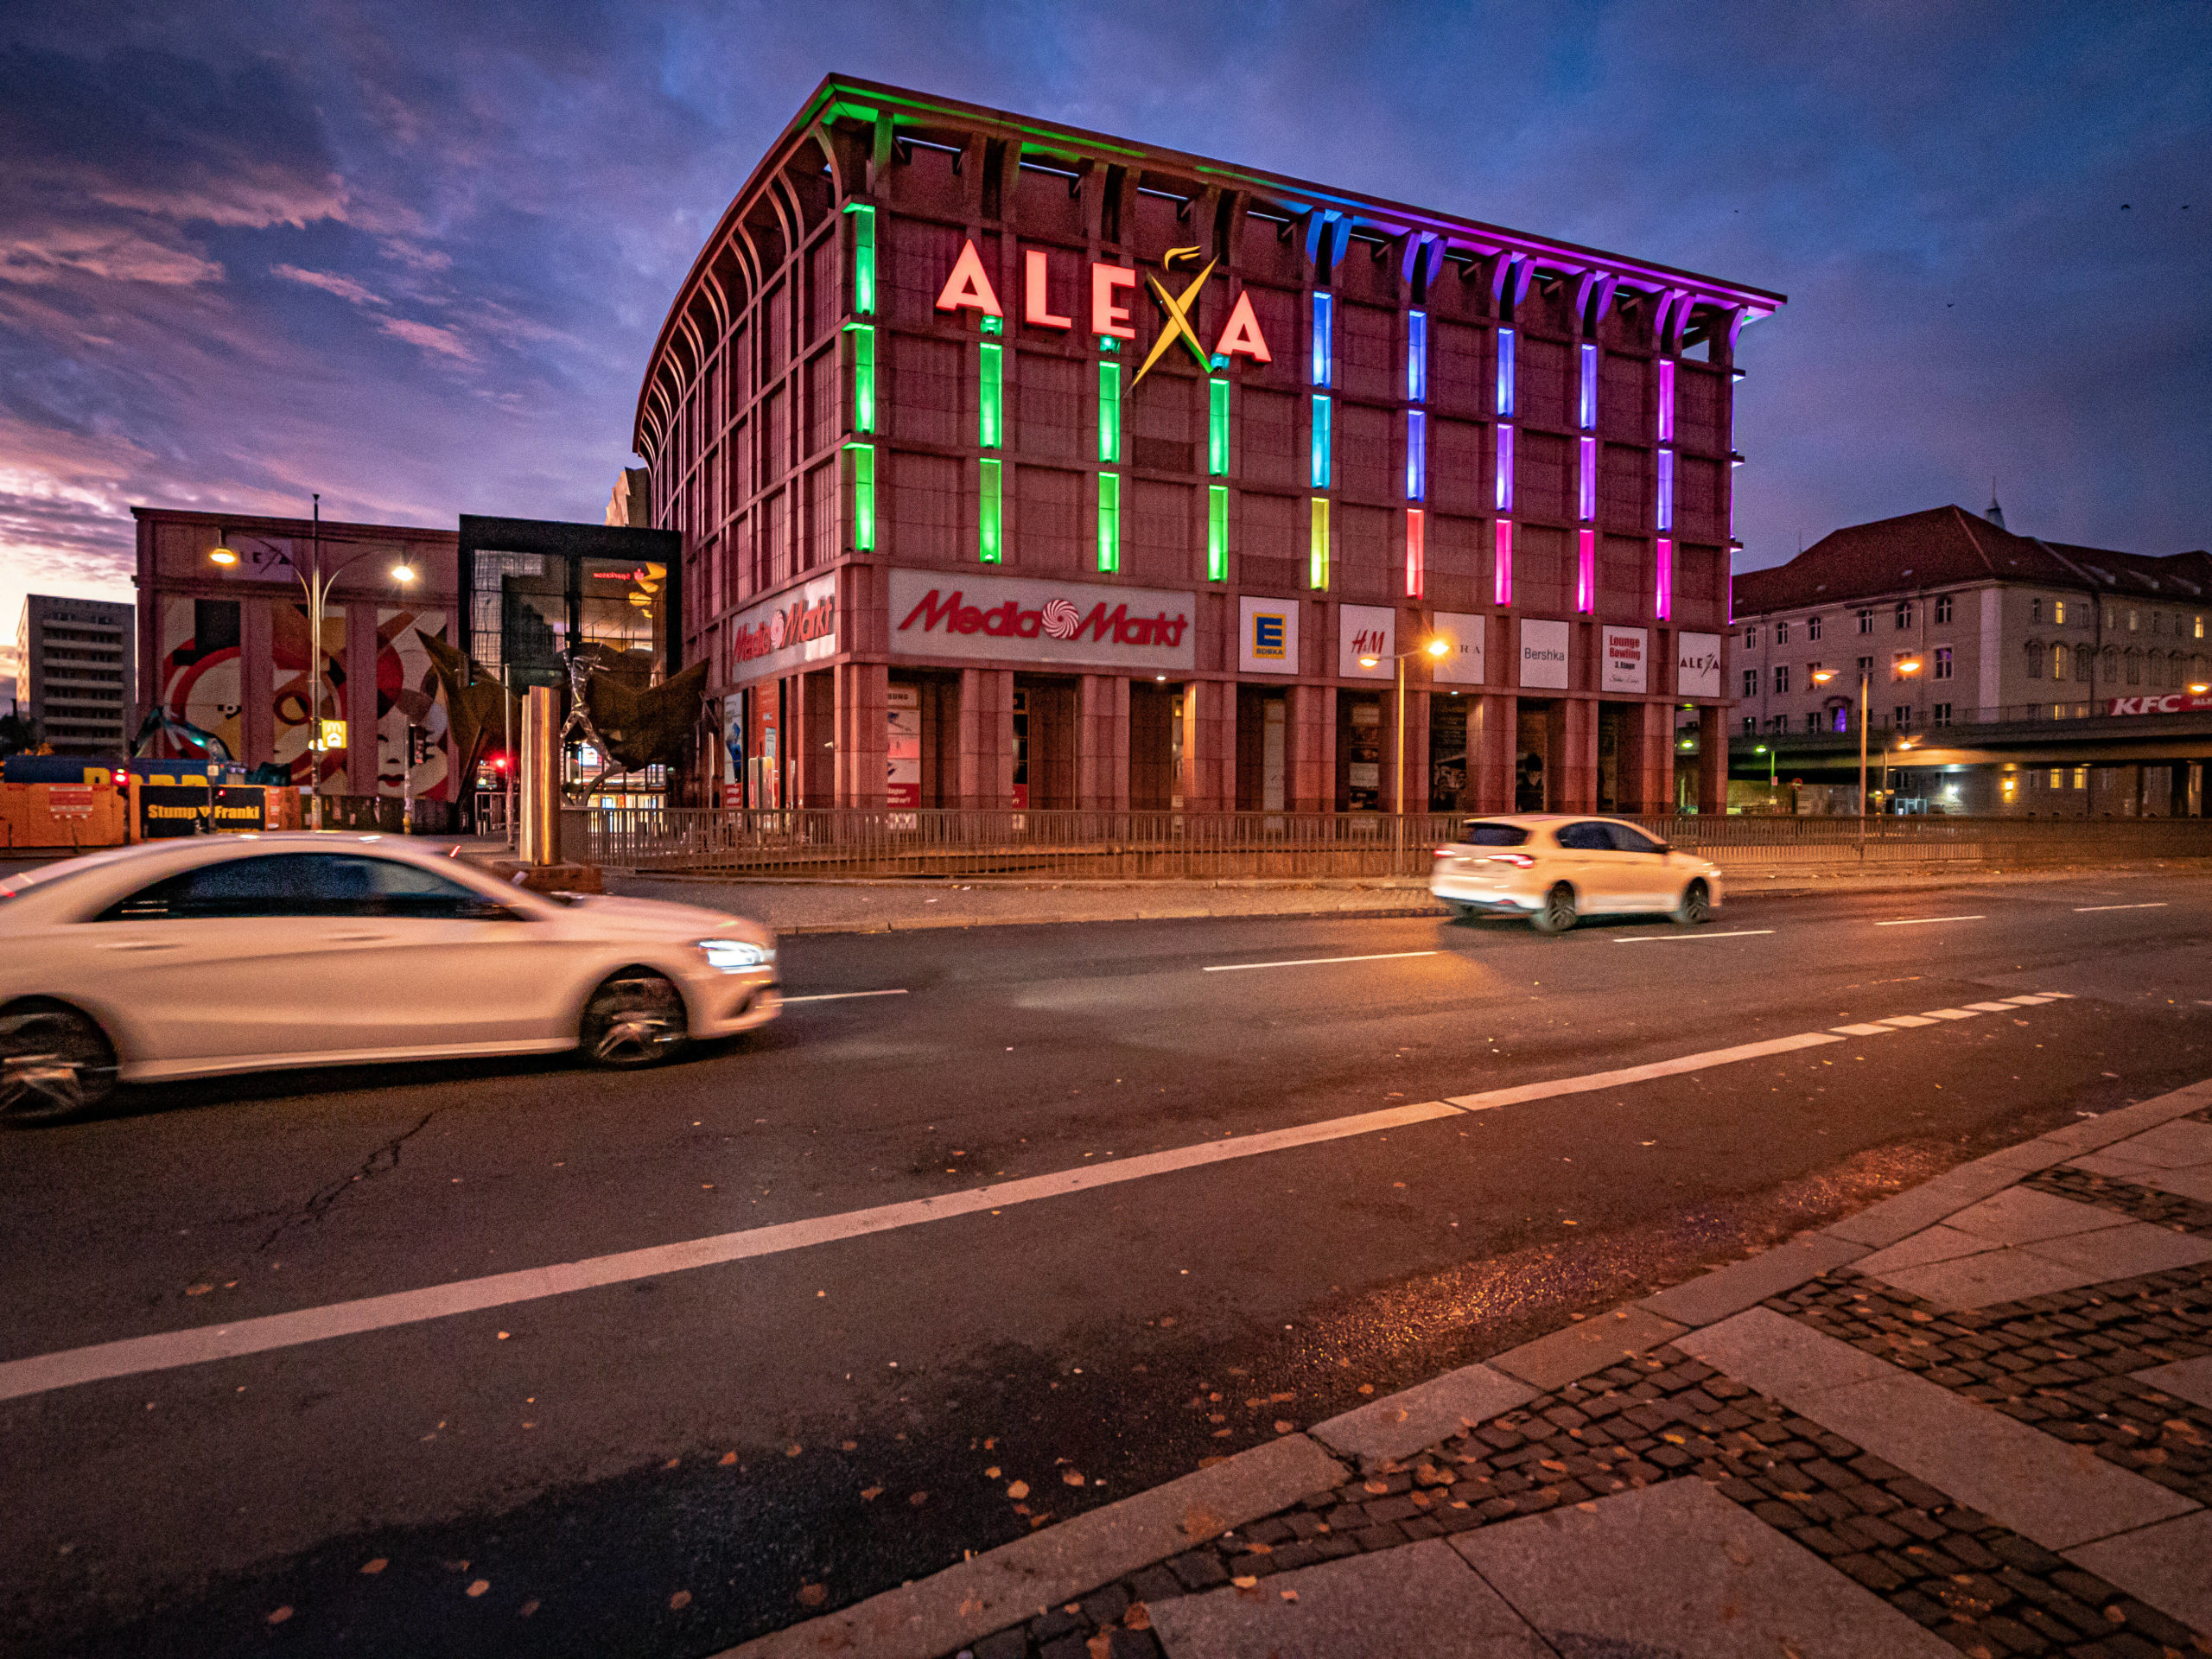 shoppen in Mitte Die Bauweise des Alexa soll Art-déco-Assoziationen wecken. Berliner:innen können diesem Stilvergleich jedoch wenig abgewinnen und bezeichnen die fast fensterlose Mall umgangssprachlich lieber als "Rosaroter Bunker" oder "Pharaonengrab". 